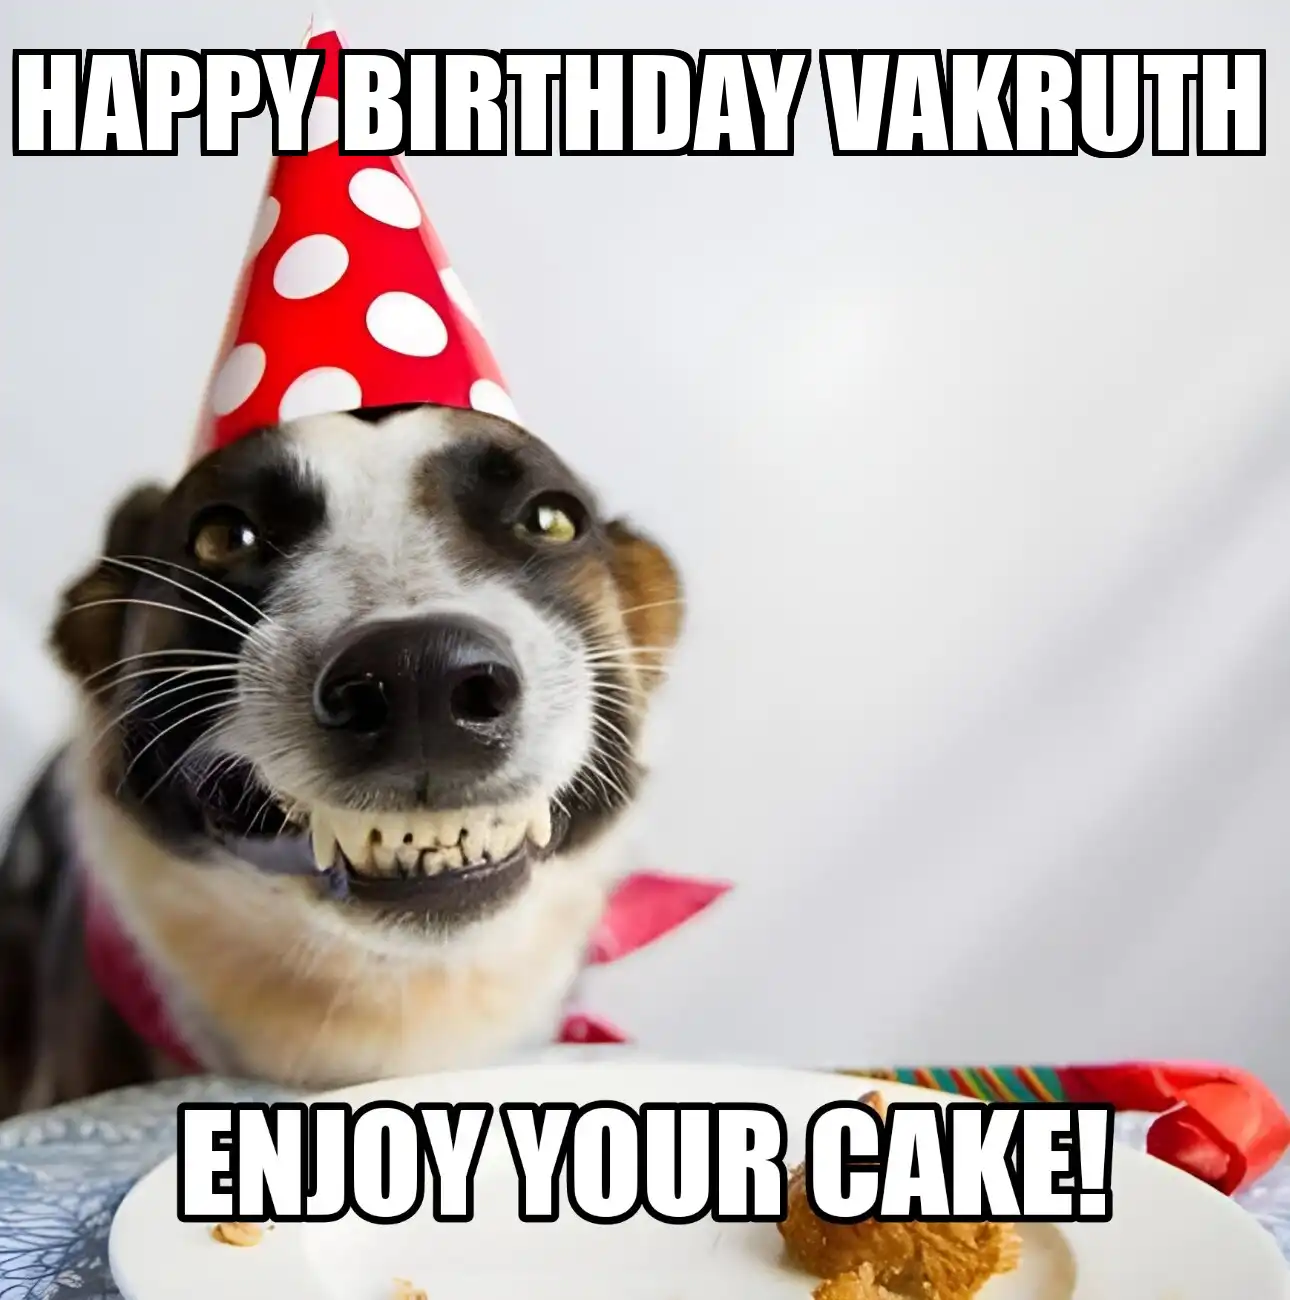 Happy Birthday Vakruth Enjoy Your Cake Dog Meme